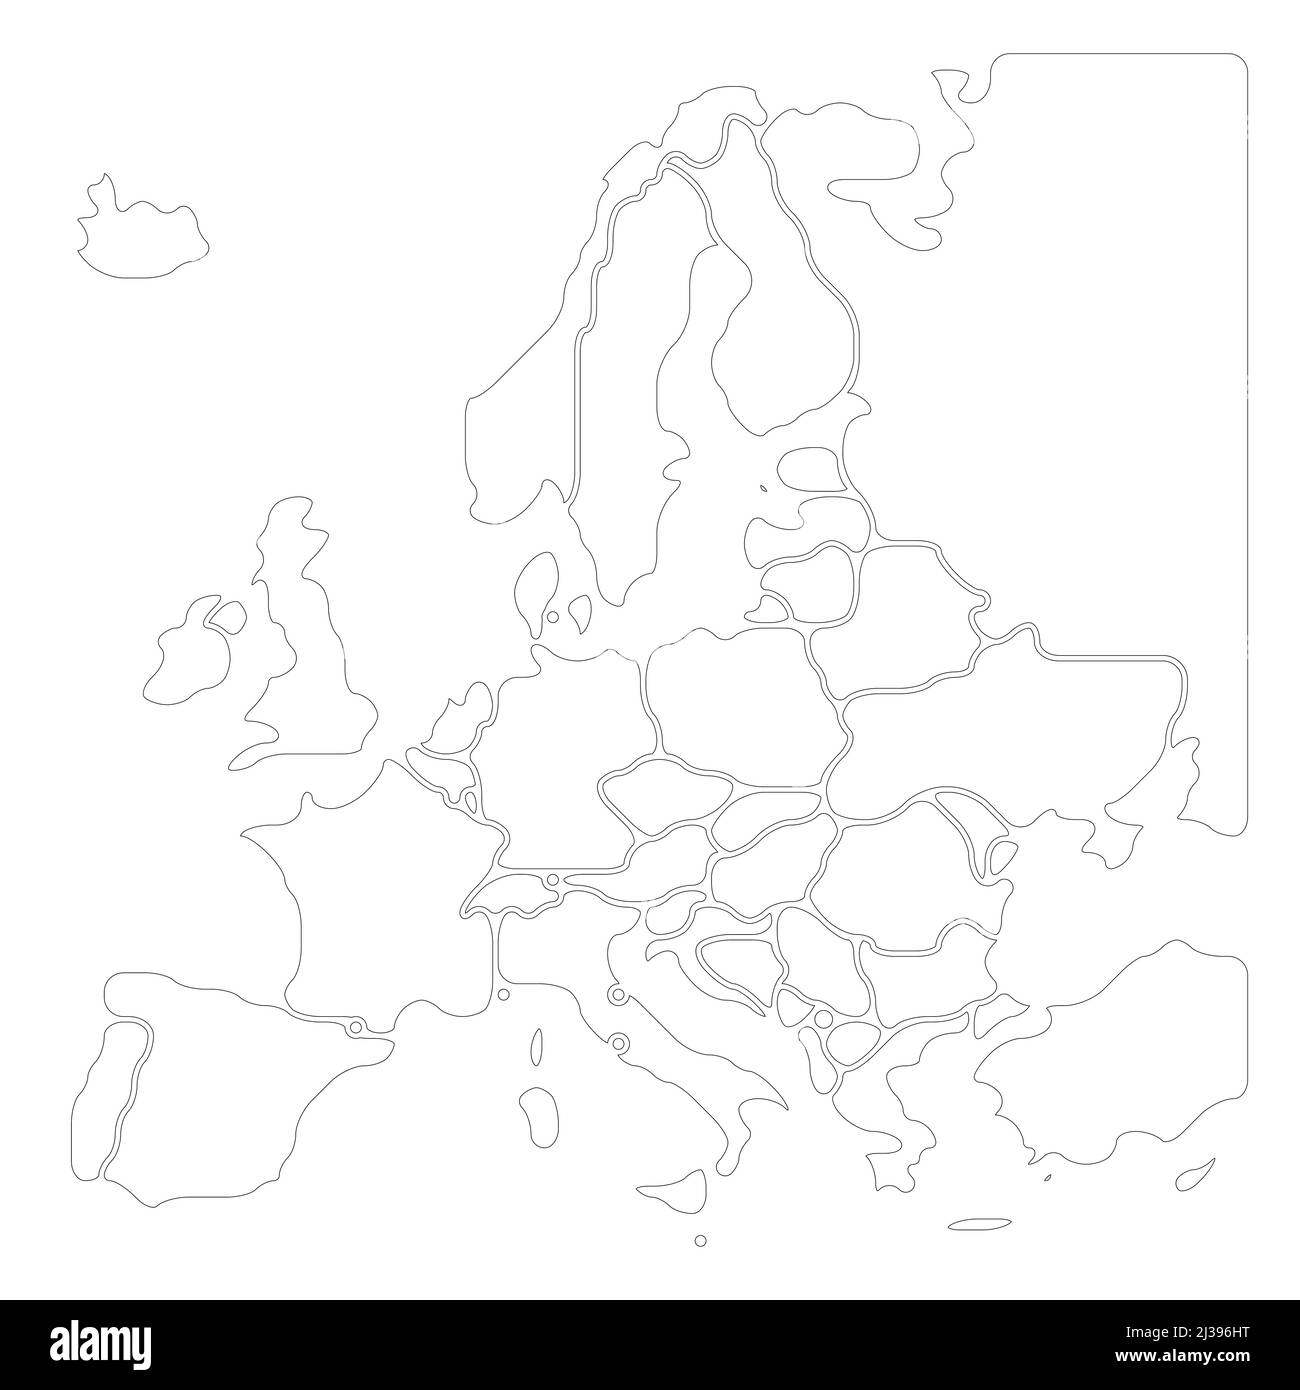 Carte simplifiée et fluide de l'Europe Illustration de Vecteur